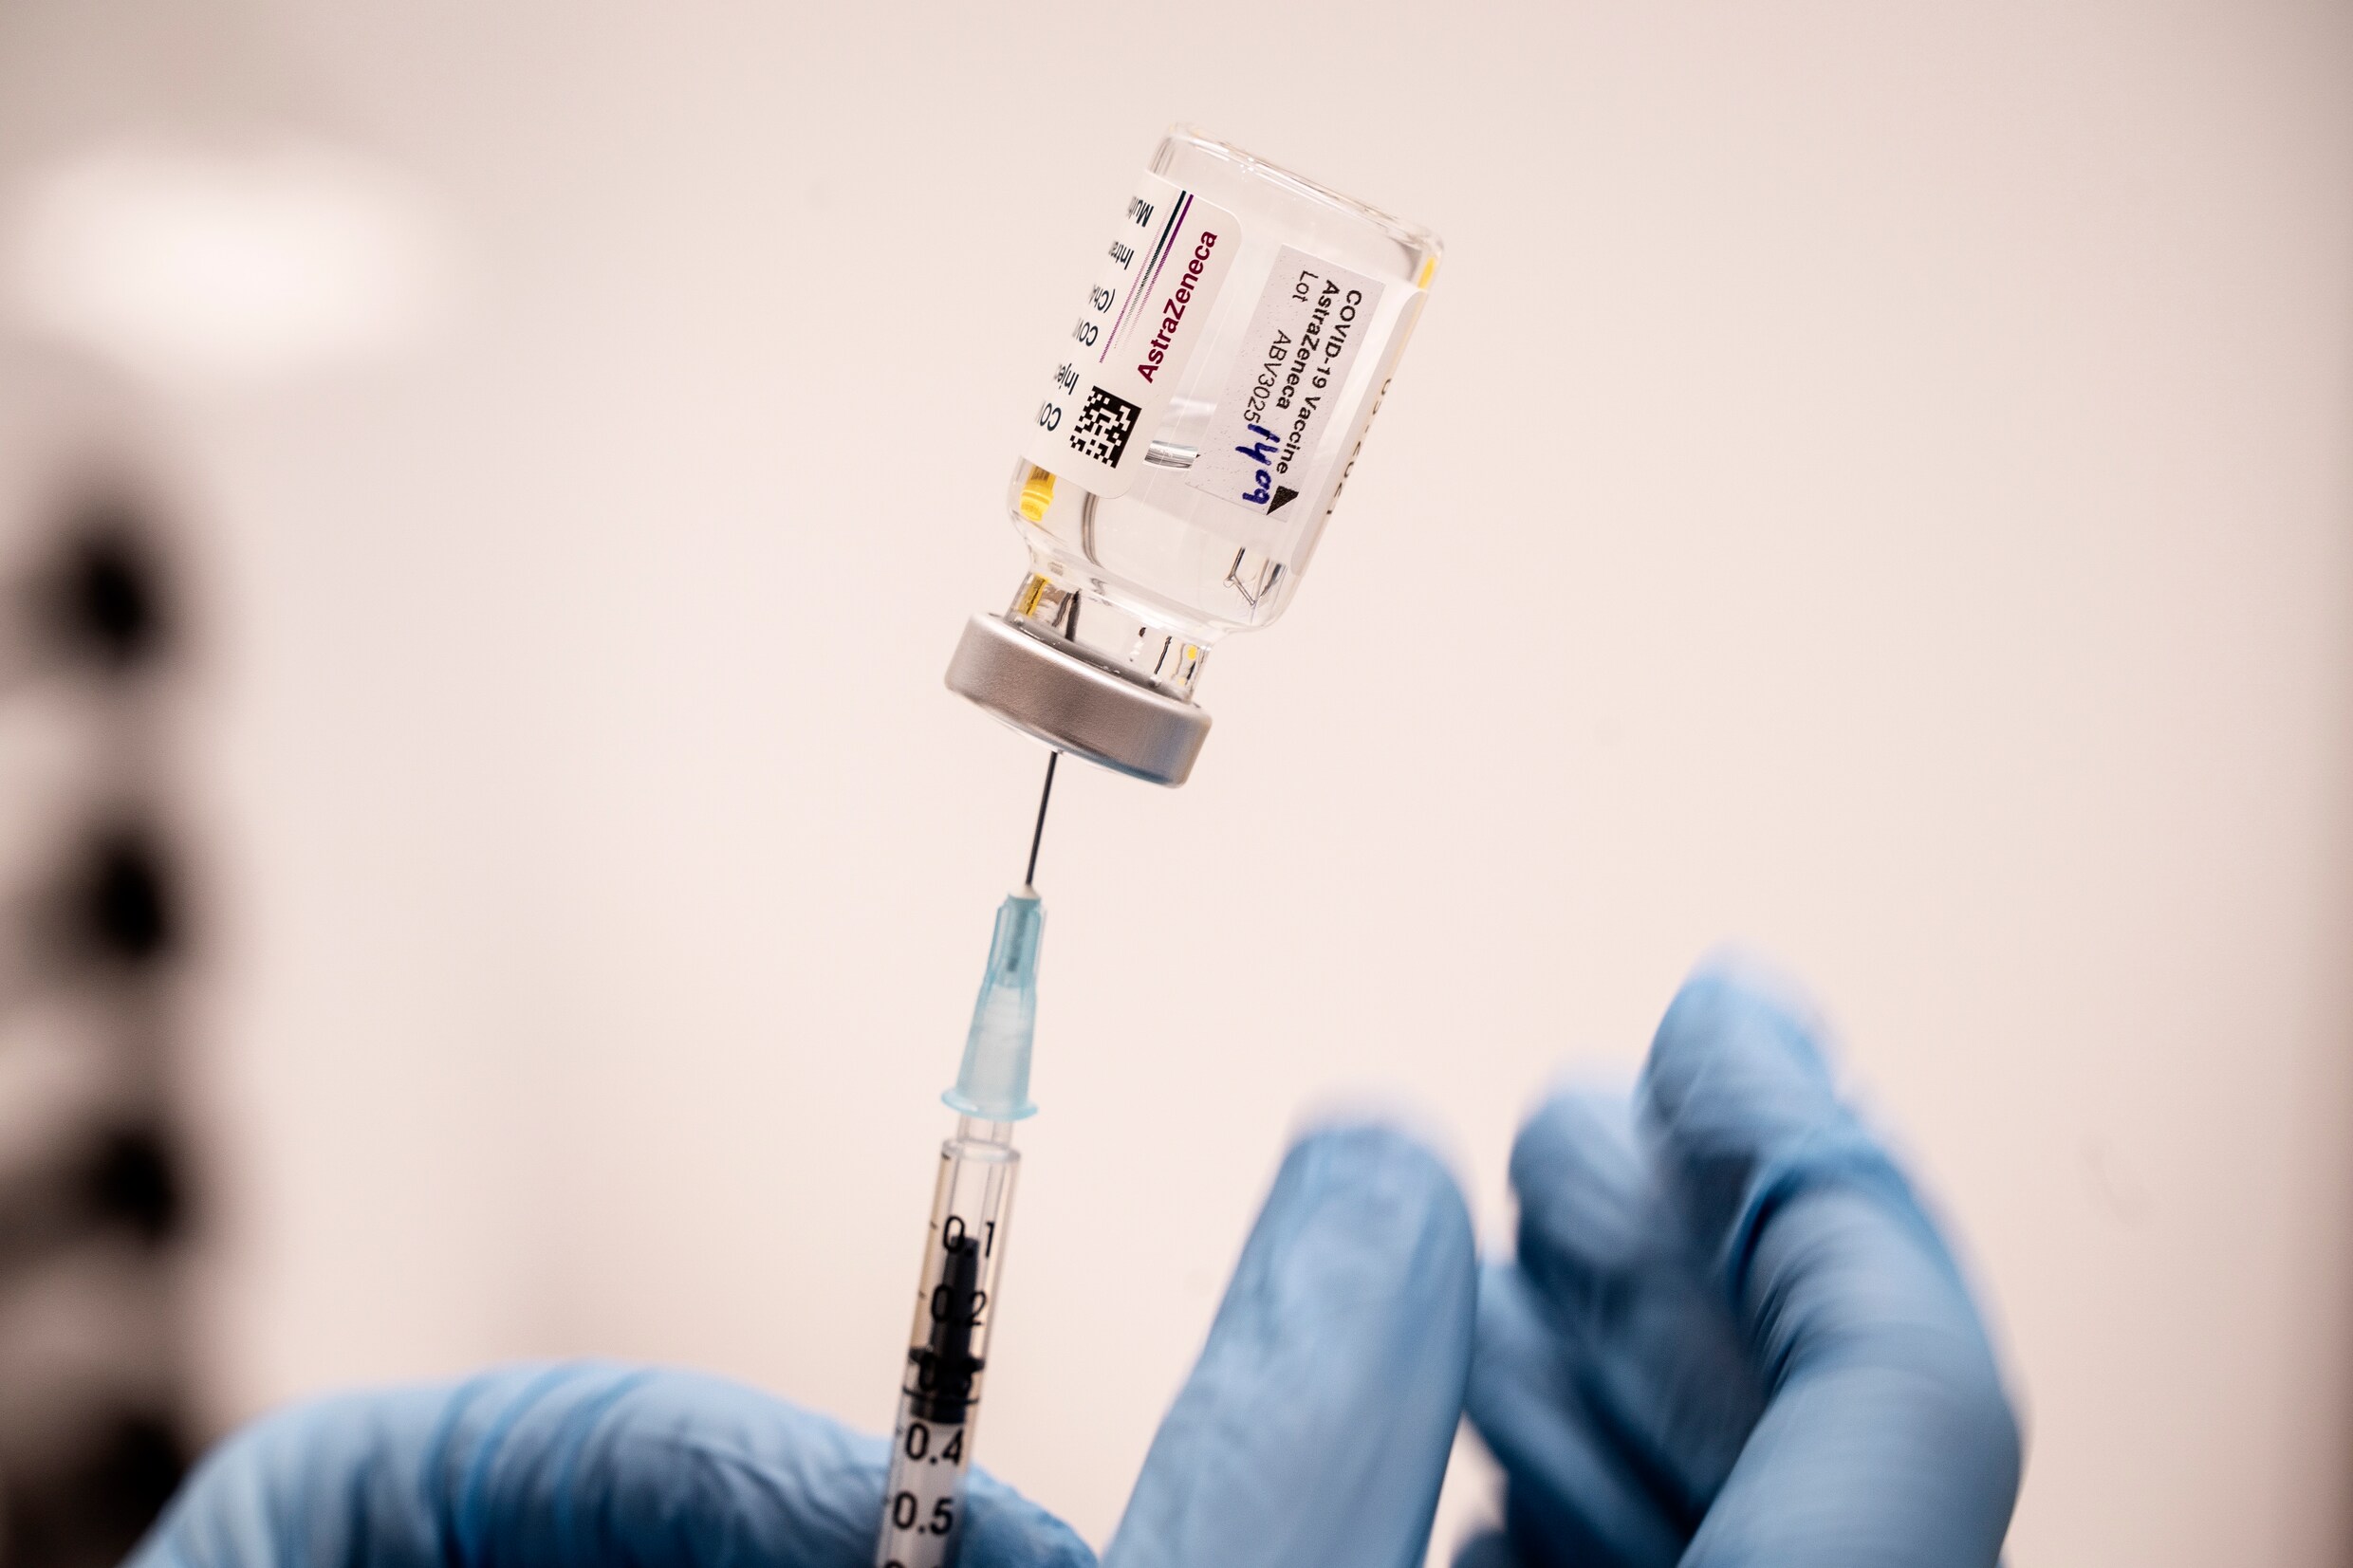 Duitse wetenschappers denken oorzaak van zeldzame bloedklonters na vaccinatie gevonden te hebben, al ontbreekt bewijs